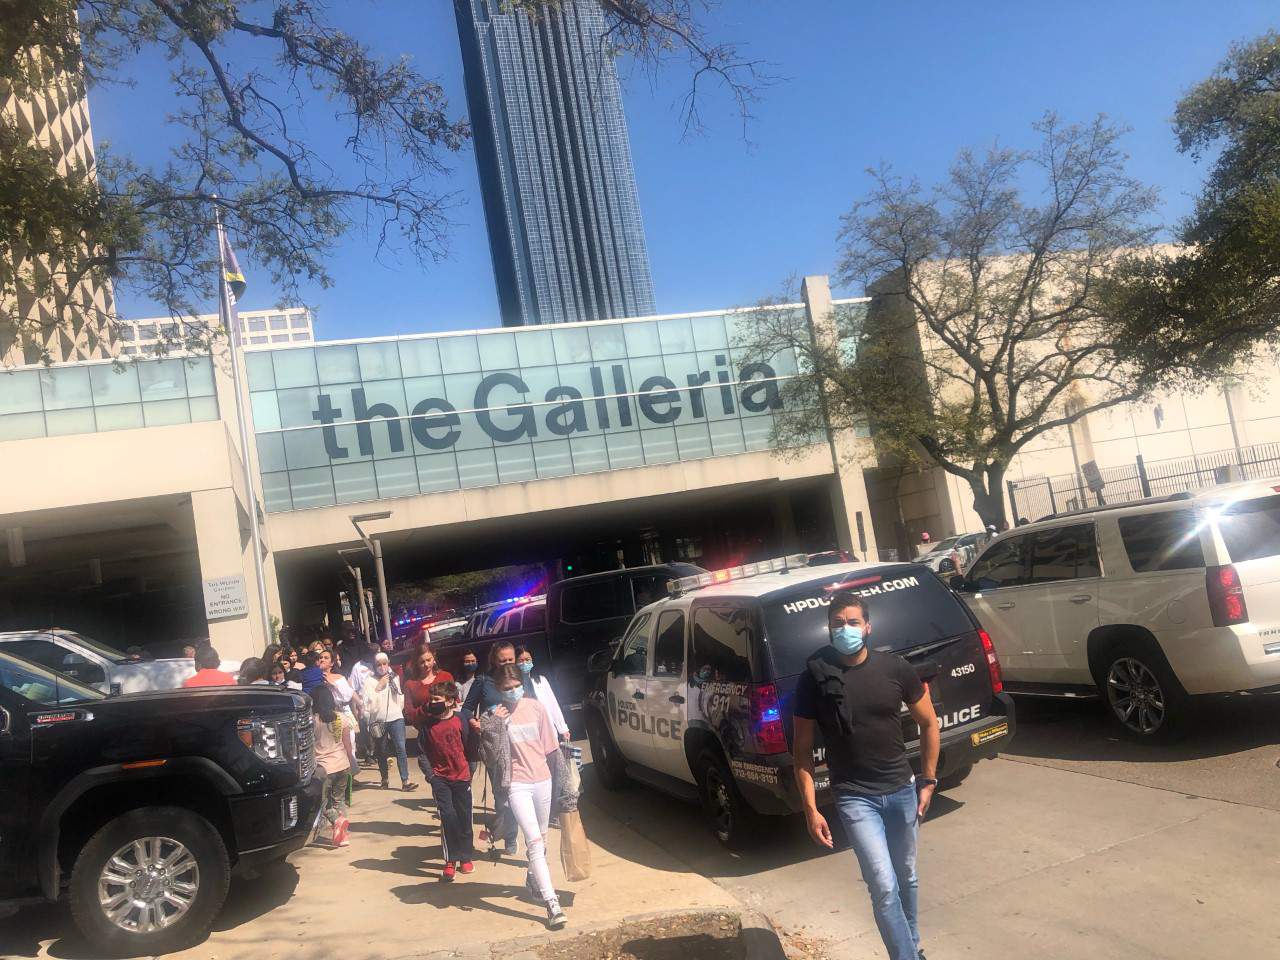 Houston police responding to disturbances at the Galleria Mall